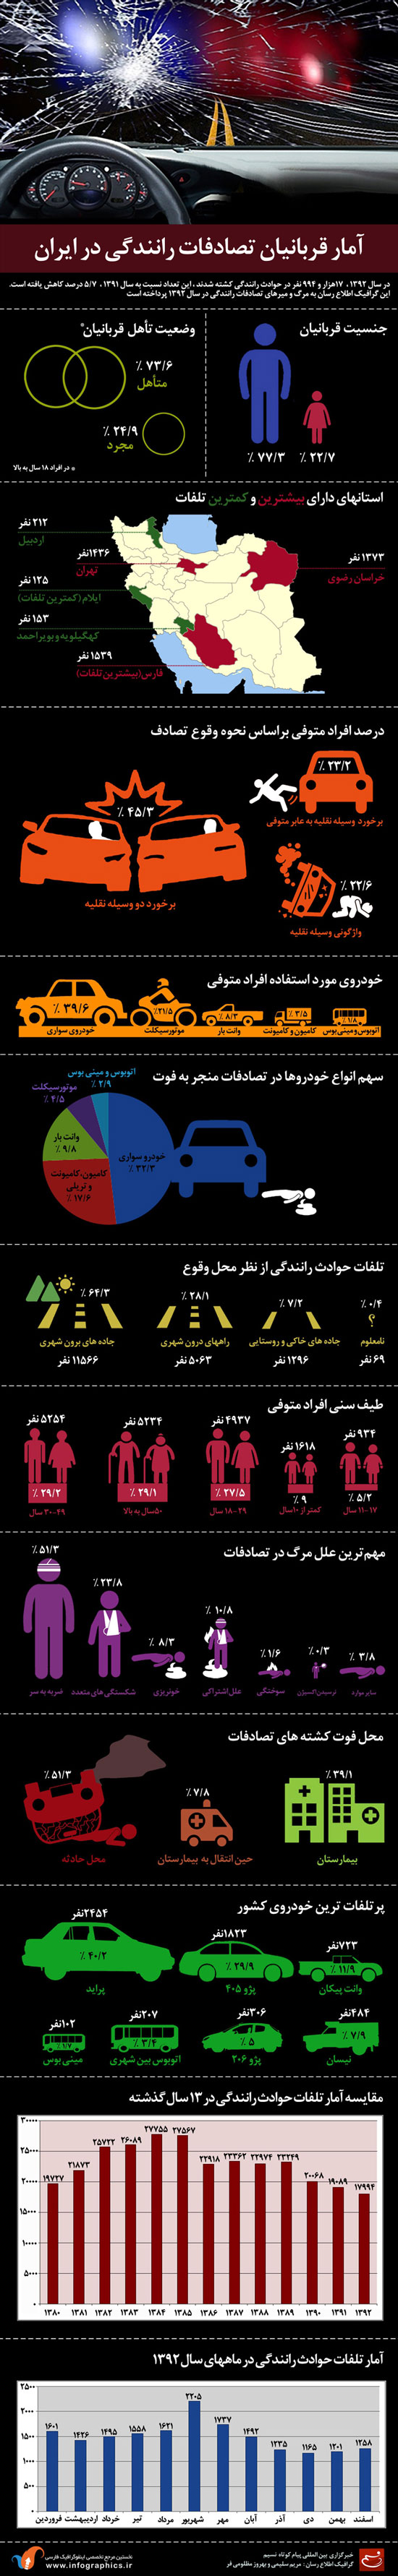 اینفوگرافی: قربانیان حوادث رانندگی در ایران